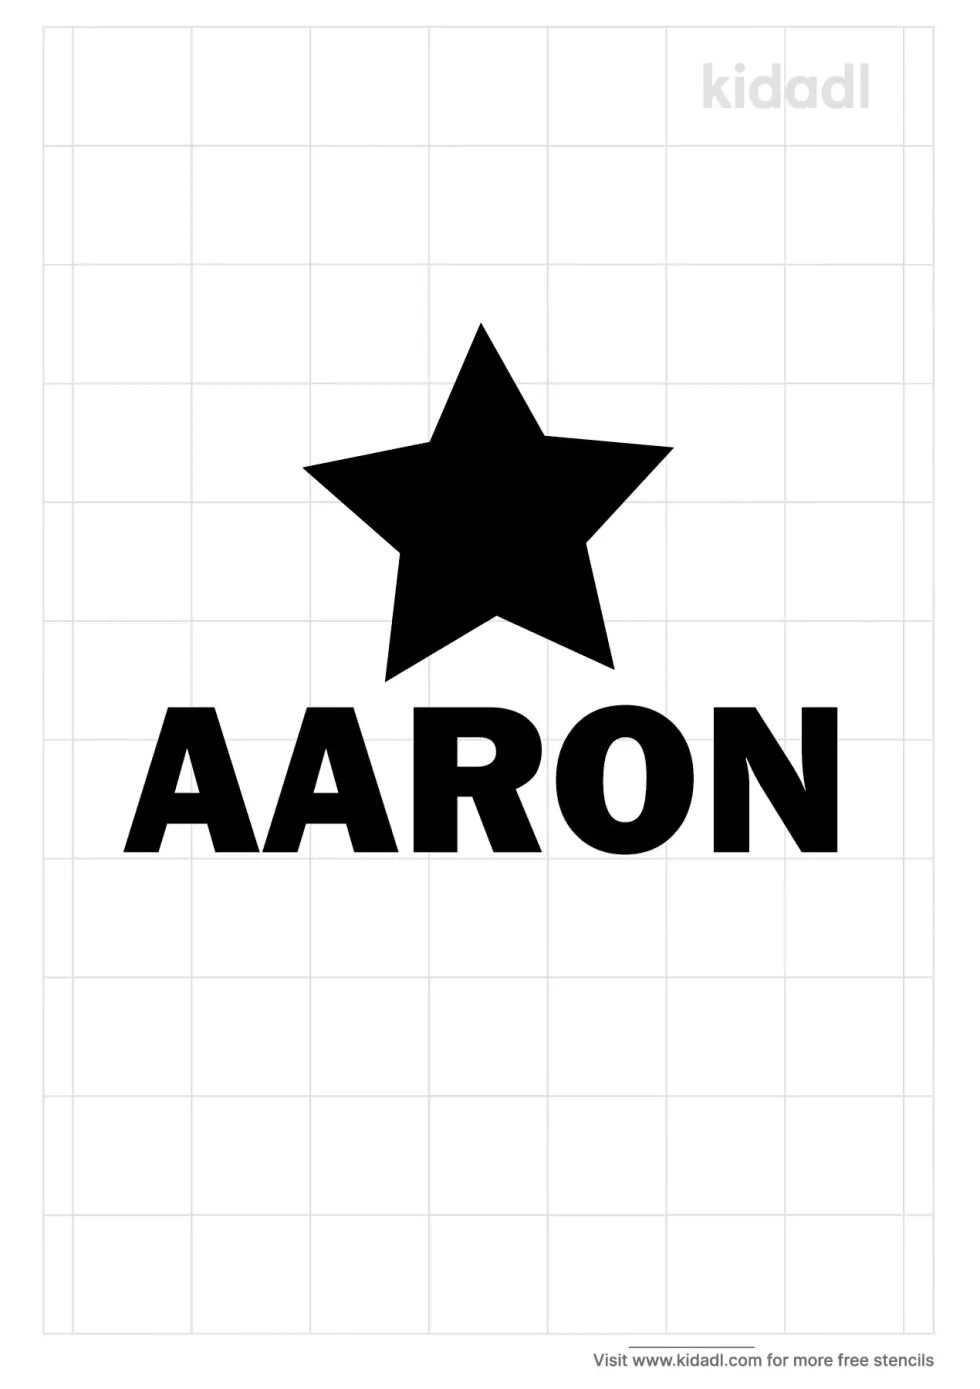 Aaron Design